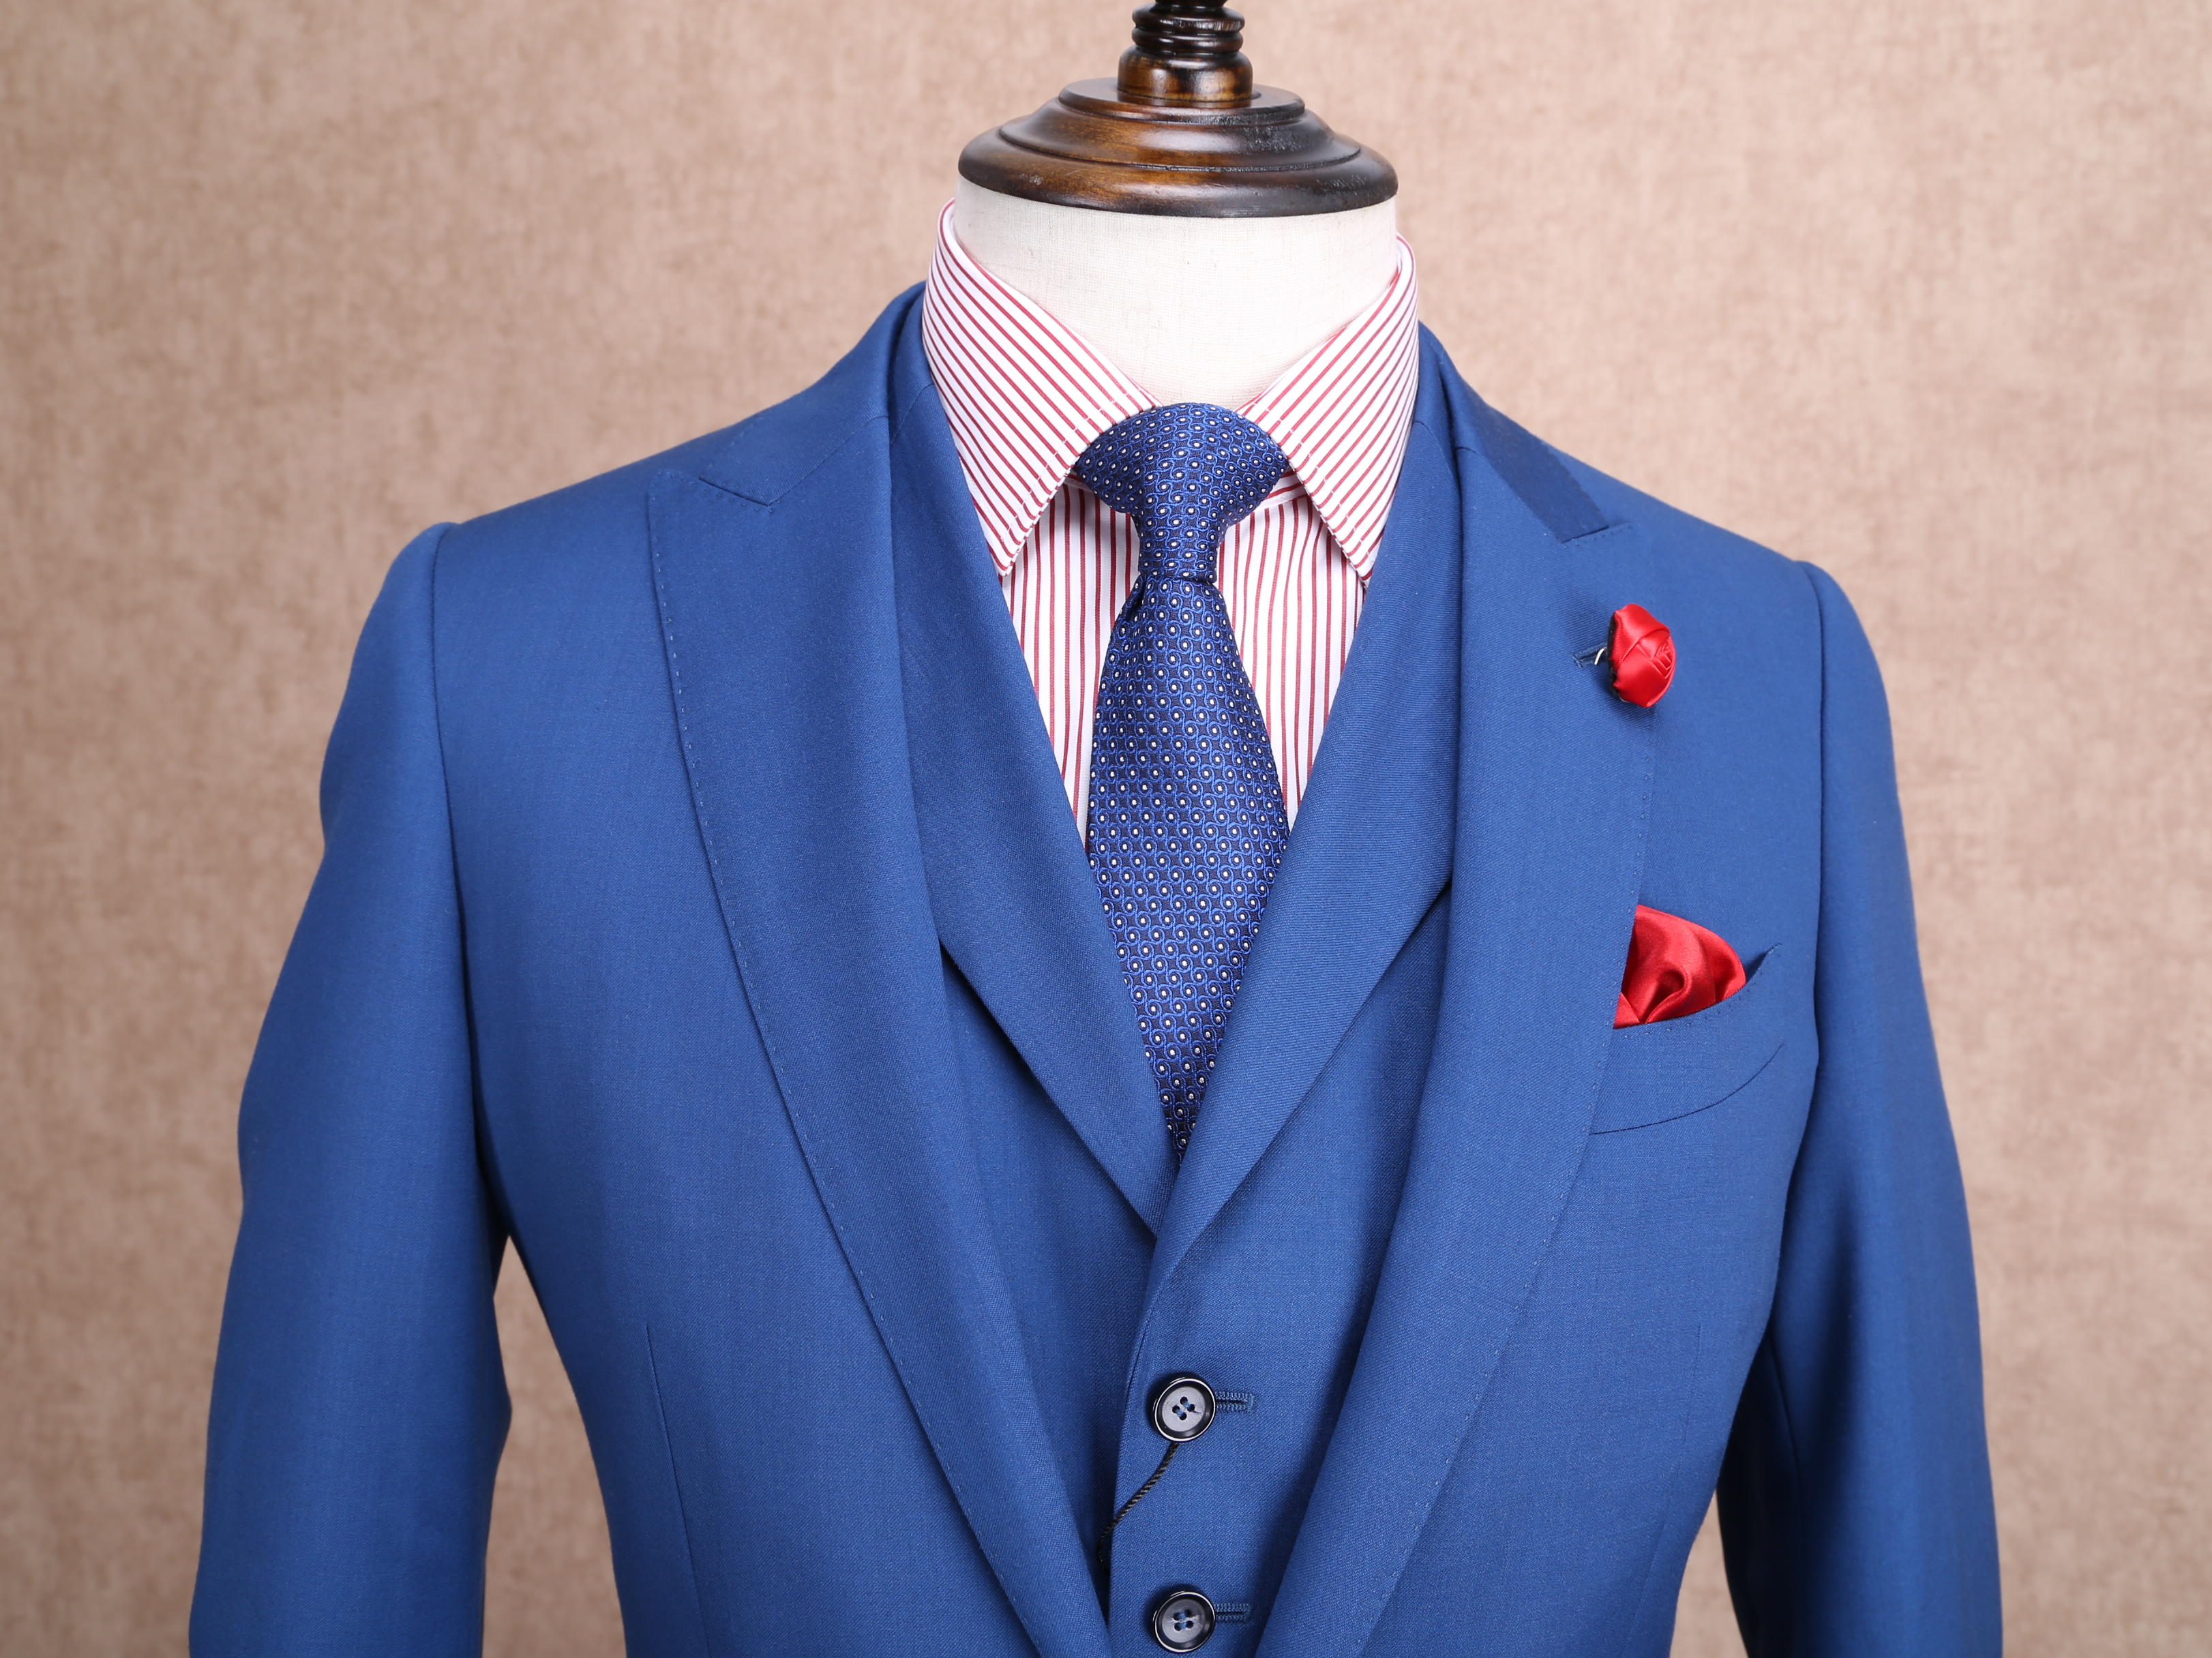 红领西服高级定制—蓝色戗驳头套装